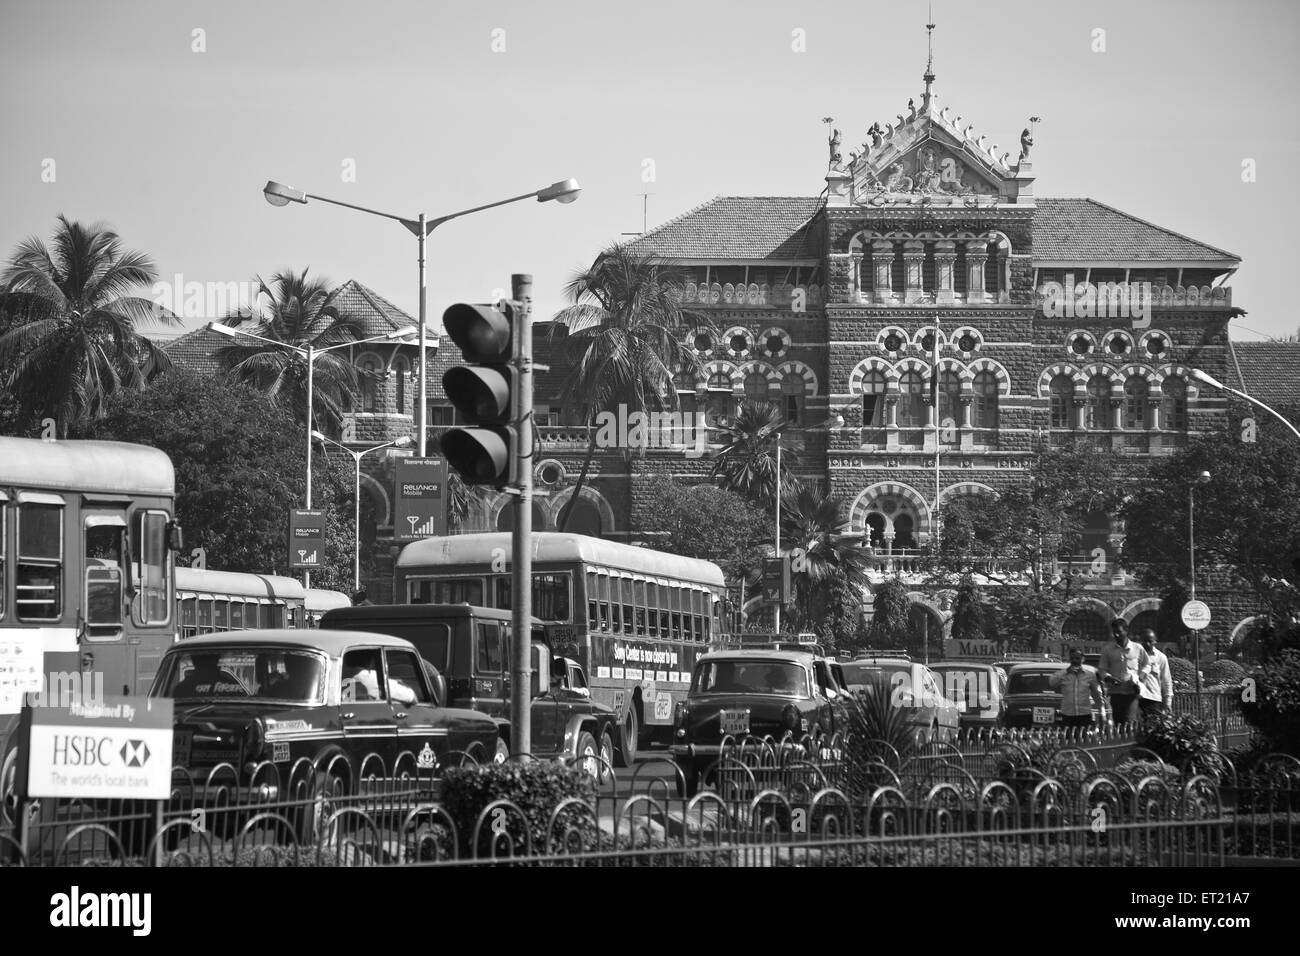 Police Headquarters ; Fort ; s p mukherjee chowk ; shahid bhagat sing marg ; Bombay Mumbai ; Stock Photo